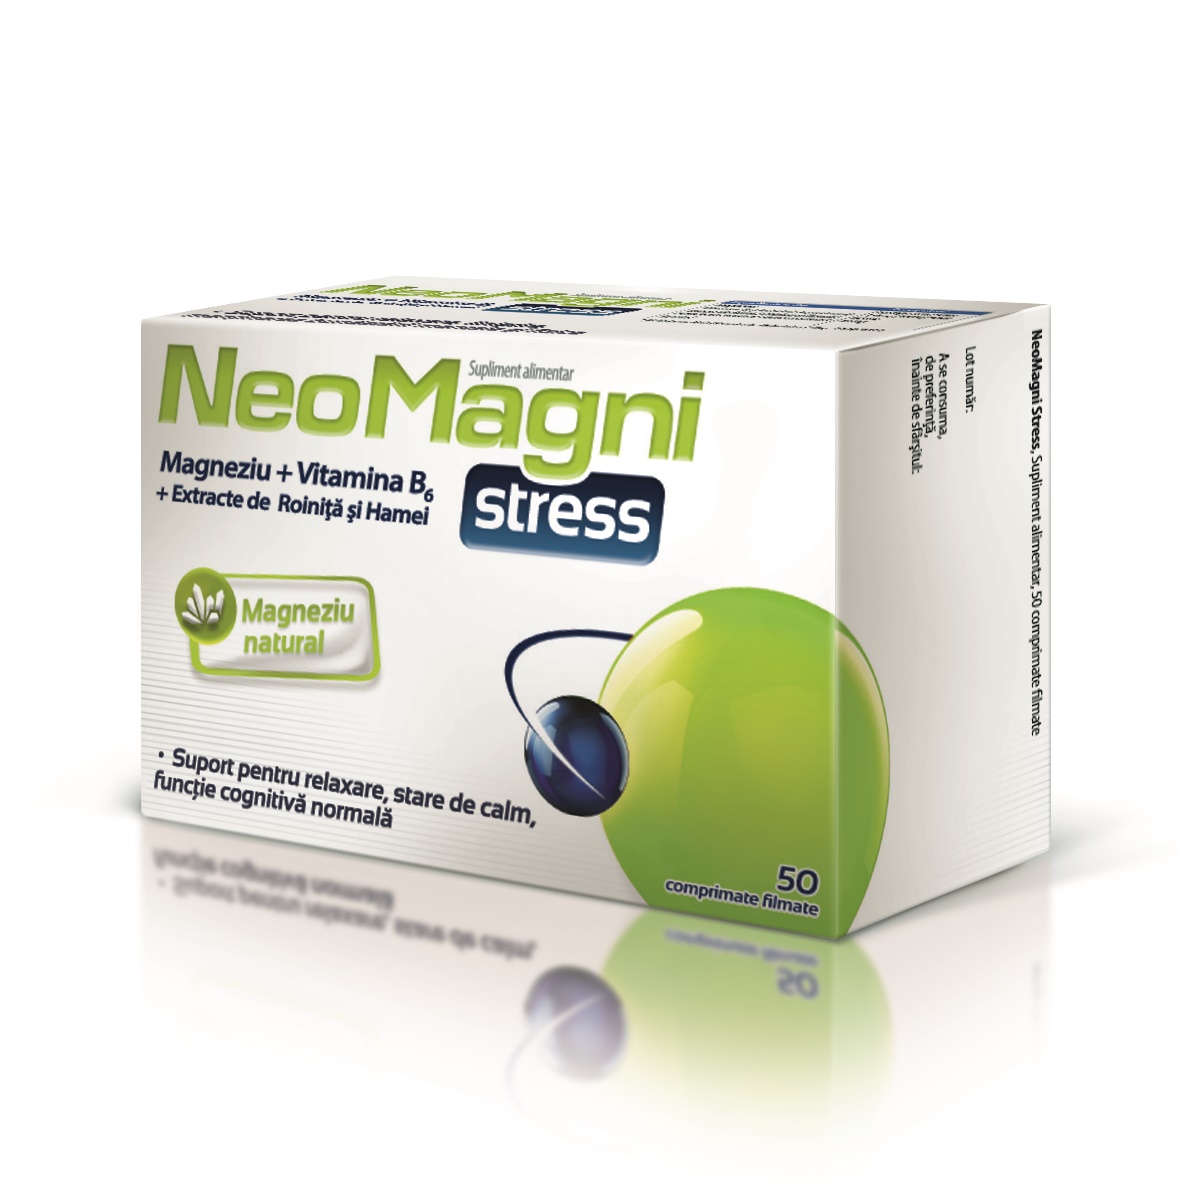 NeoMagni Stress,50 Aflofarm Farmacia Tei online